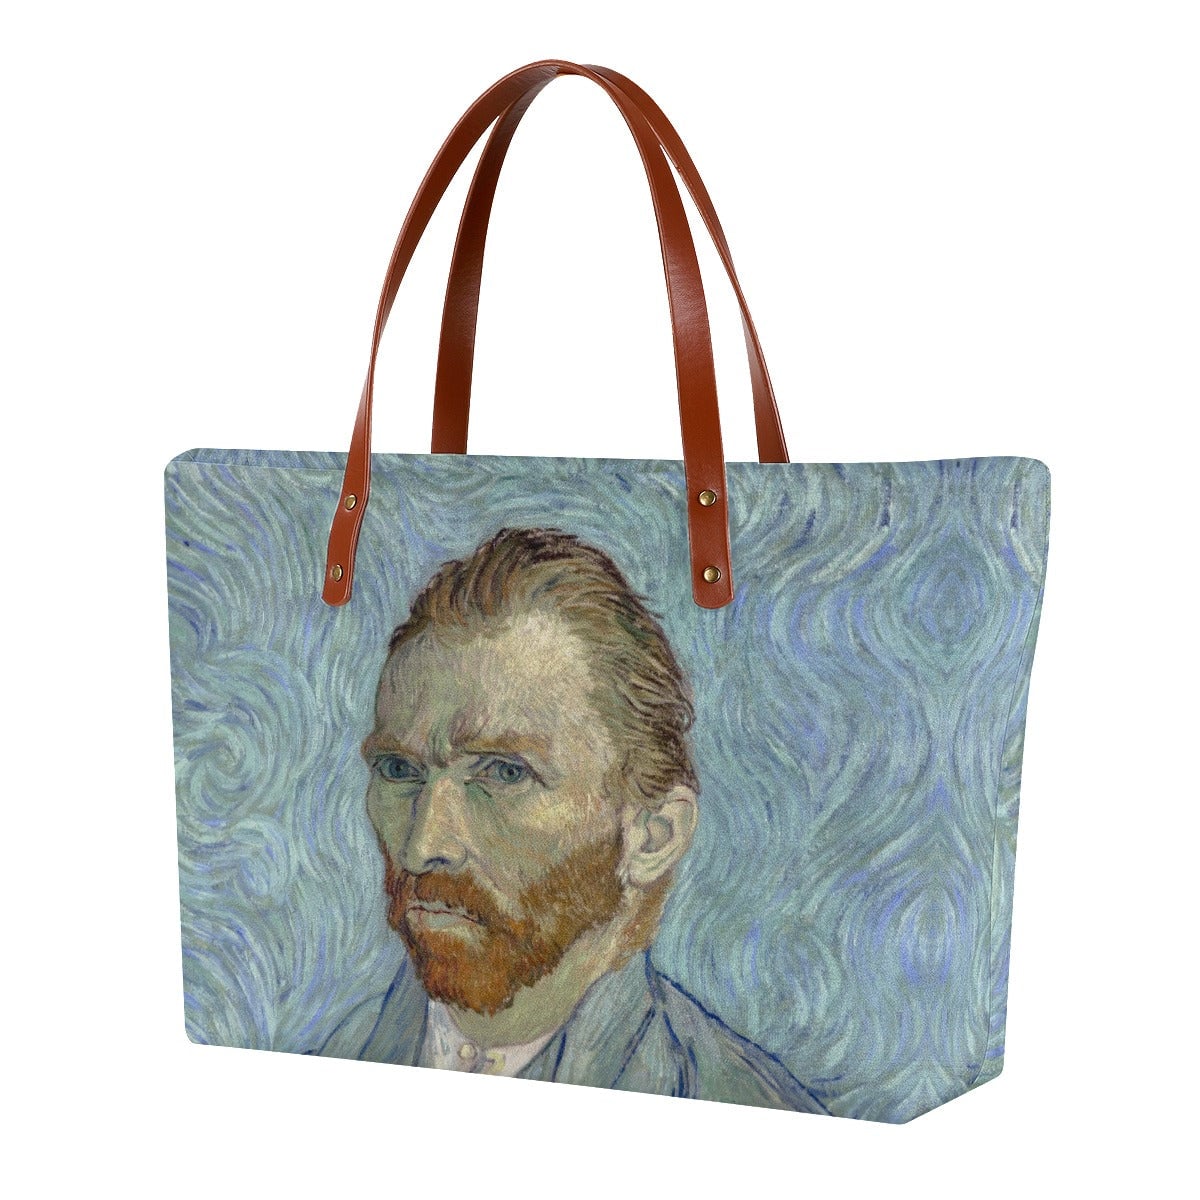 Vincent van Gogh’s Self-portrait Painting Tote Bag